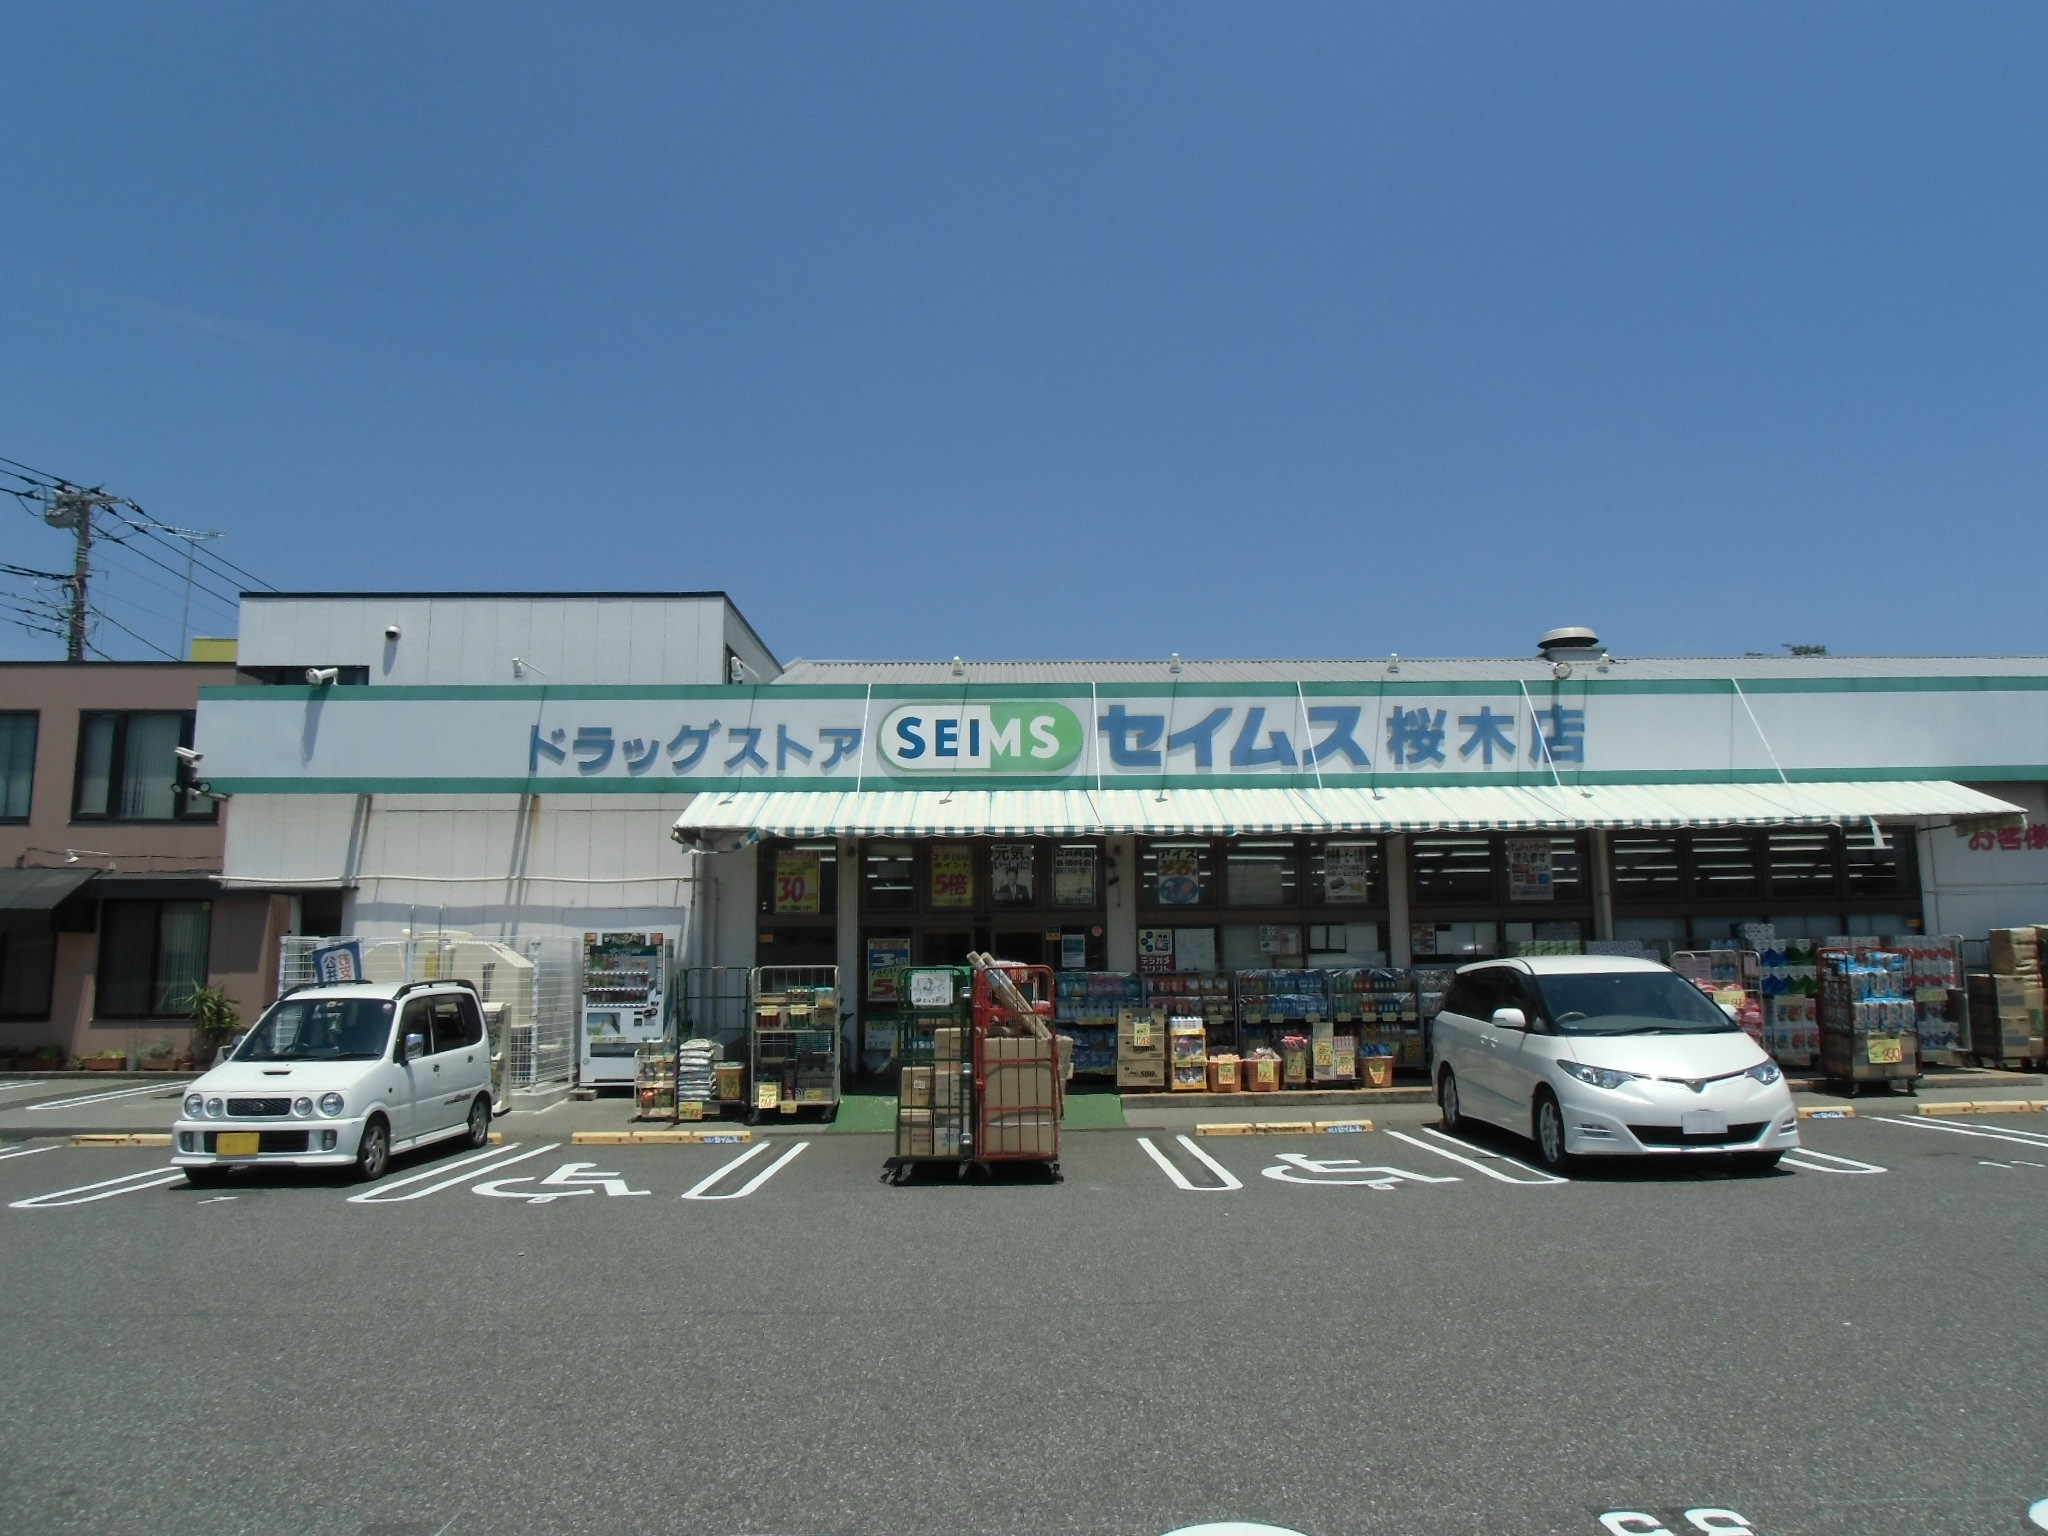 Dorakkusutoa. Drag Seimusu Sakuragi shop 483m until (drugstore)